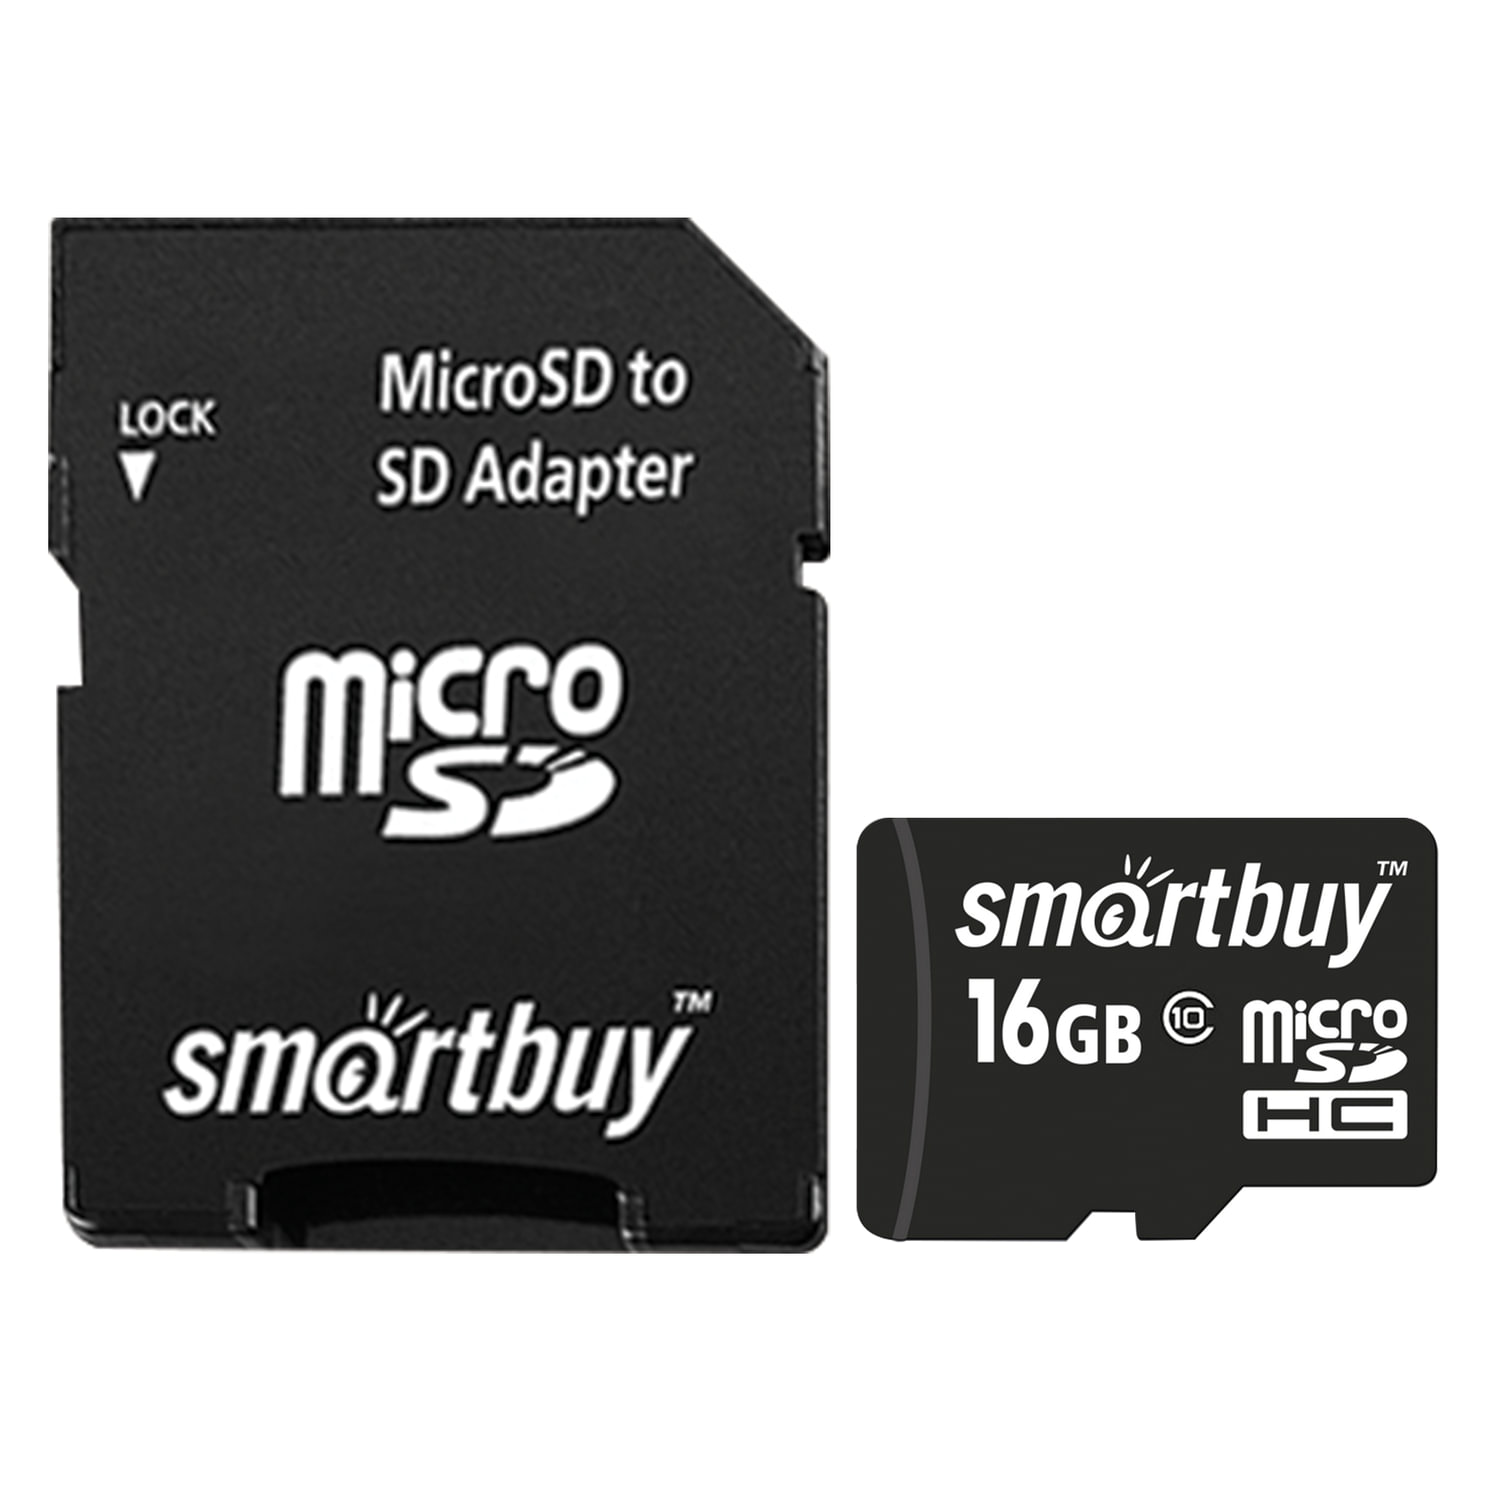 Флешки микро сд цена. SMARTBUY 32gb MICROSD. Карта памяти SMARTBUY MICROSDHC class 10 8gb + SD Adapter. Карта памяти SMARTBUY MICROSDHC 16gb. Карта памяти Micro SDHC, 32 GB, SMARTBUY, 10 МБ/сек. (Class 10), с адаптером, sb32gbsdcl10-01.